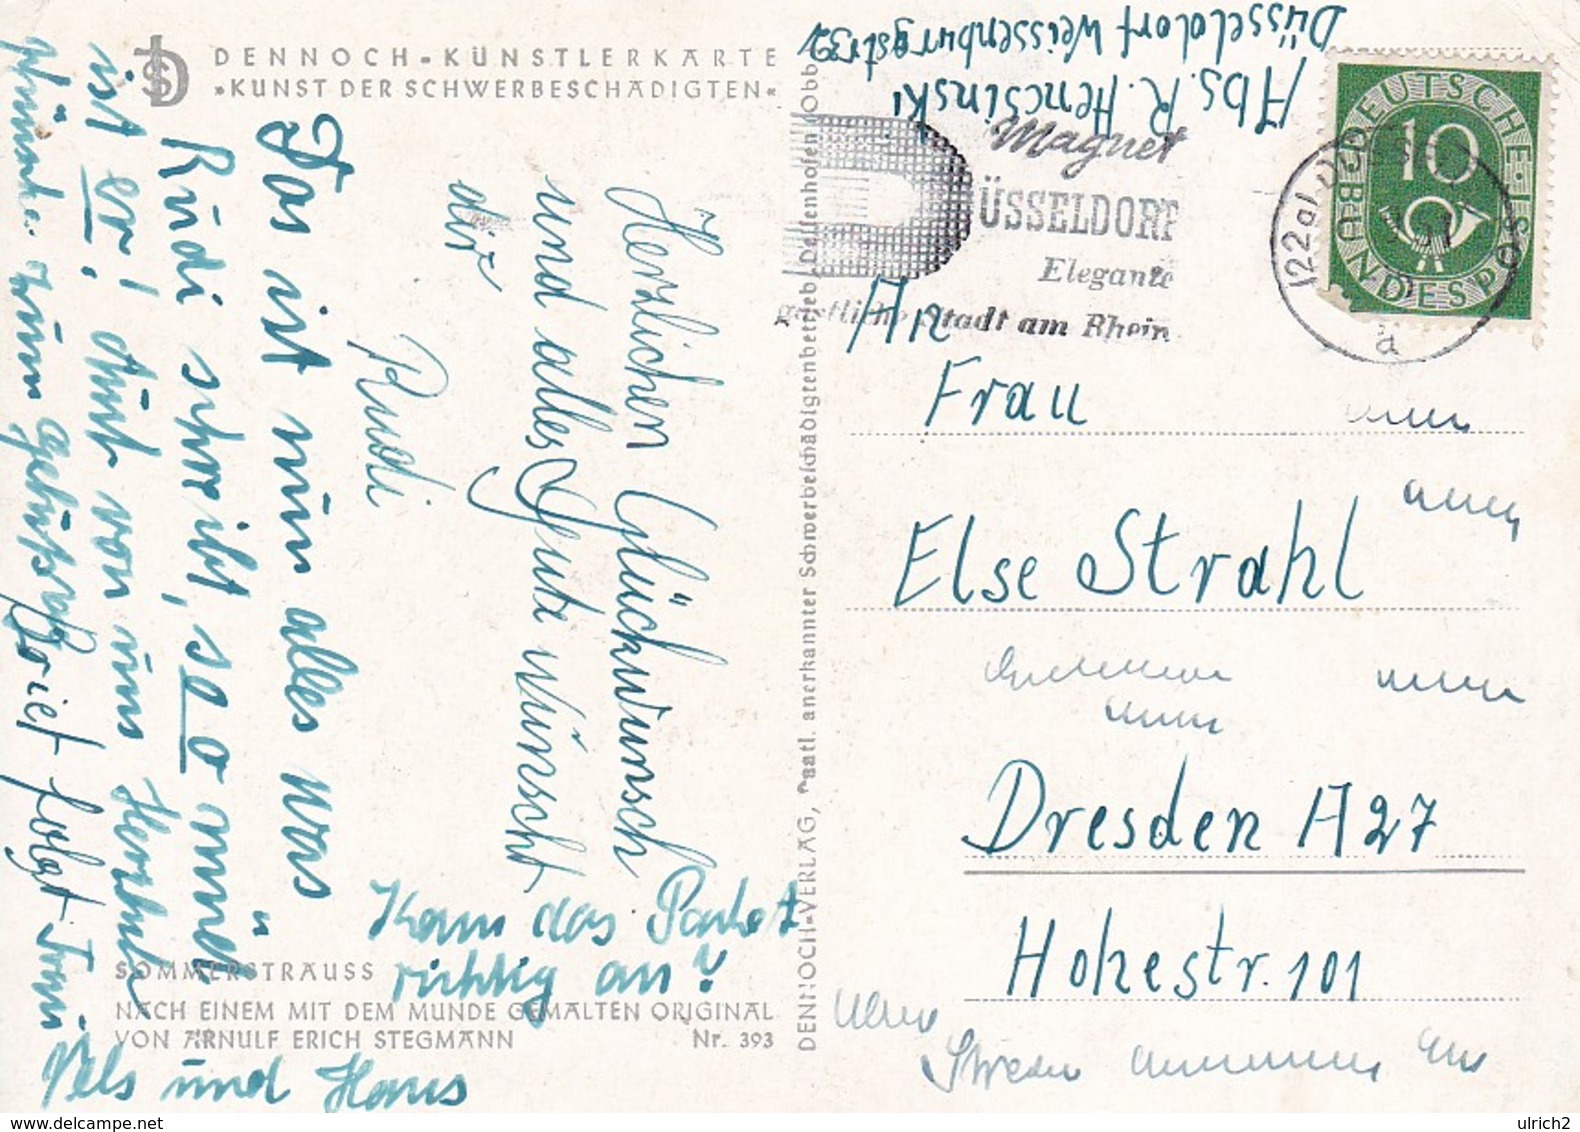 AK Erich Stegmann - Sommerstrauß - Mit Dem Munde Gemalt - Werbestempel Magnet Düsseldorf - 1951 (41756) - Paintings